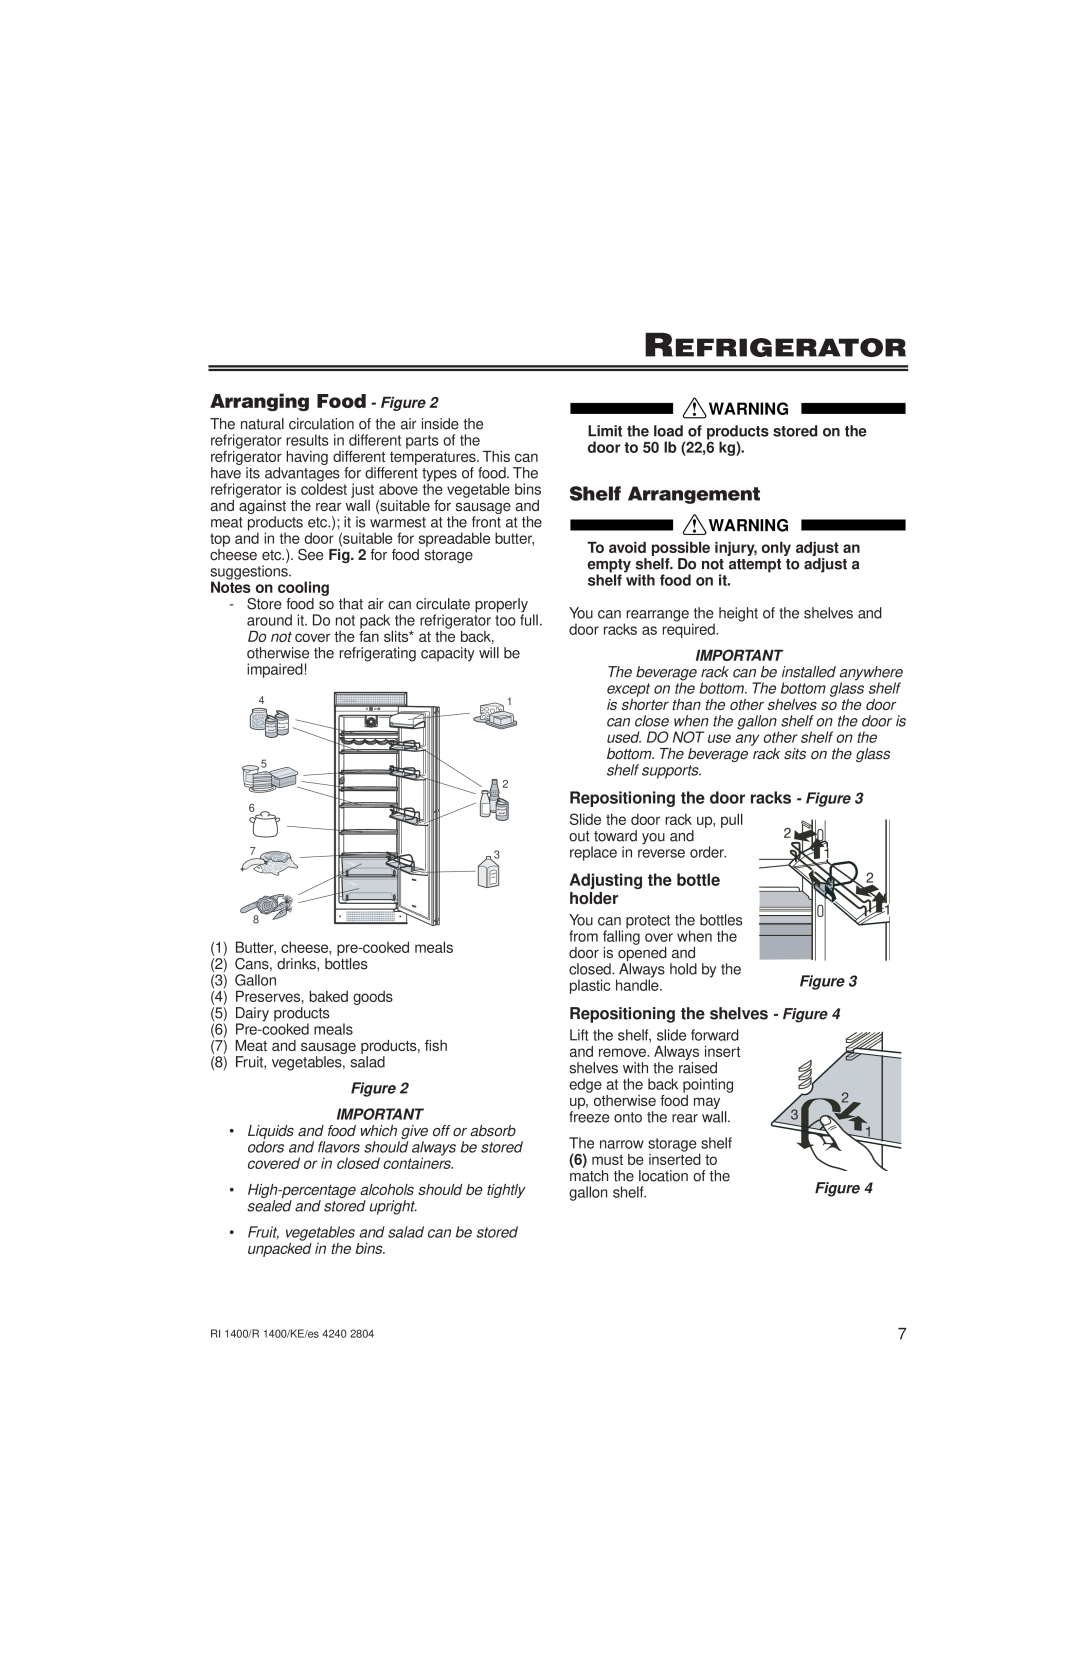 Liebherr 7082 246-00 Refrigerator, Arranging Food - Figure, Shelf Arrangement, Repositioning the door racks - Figure 